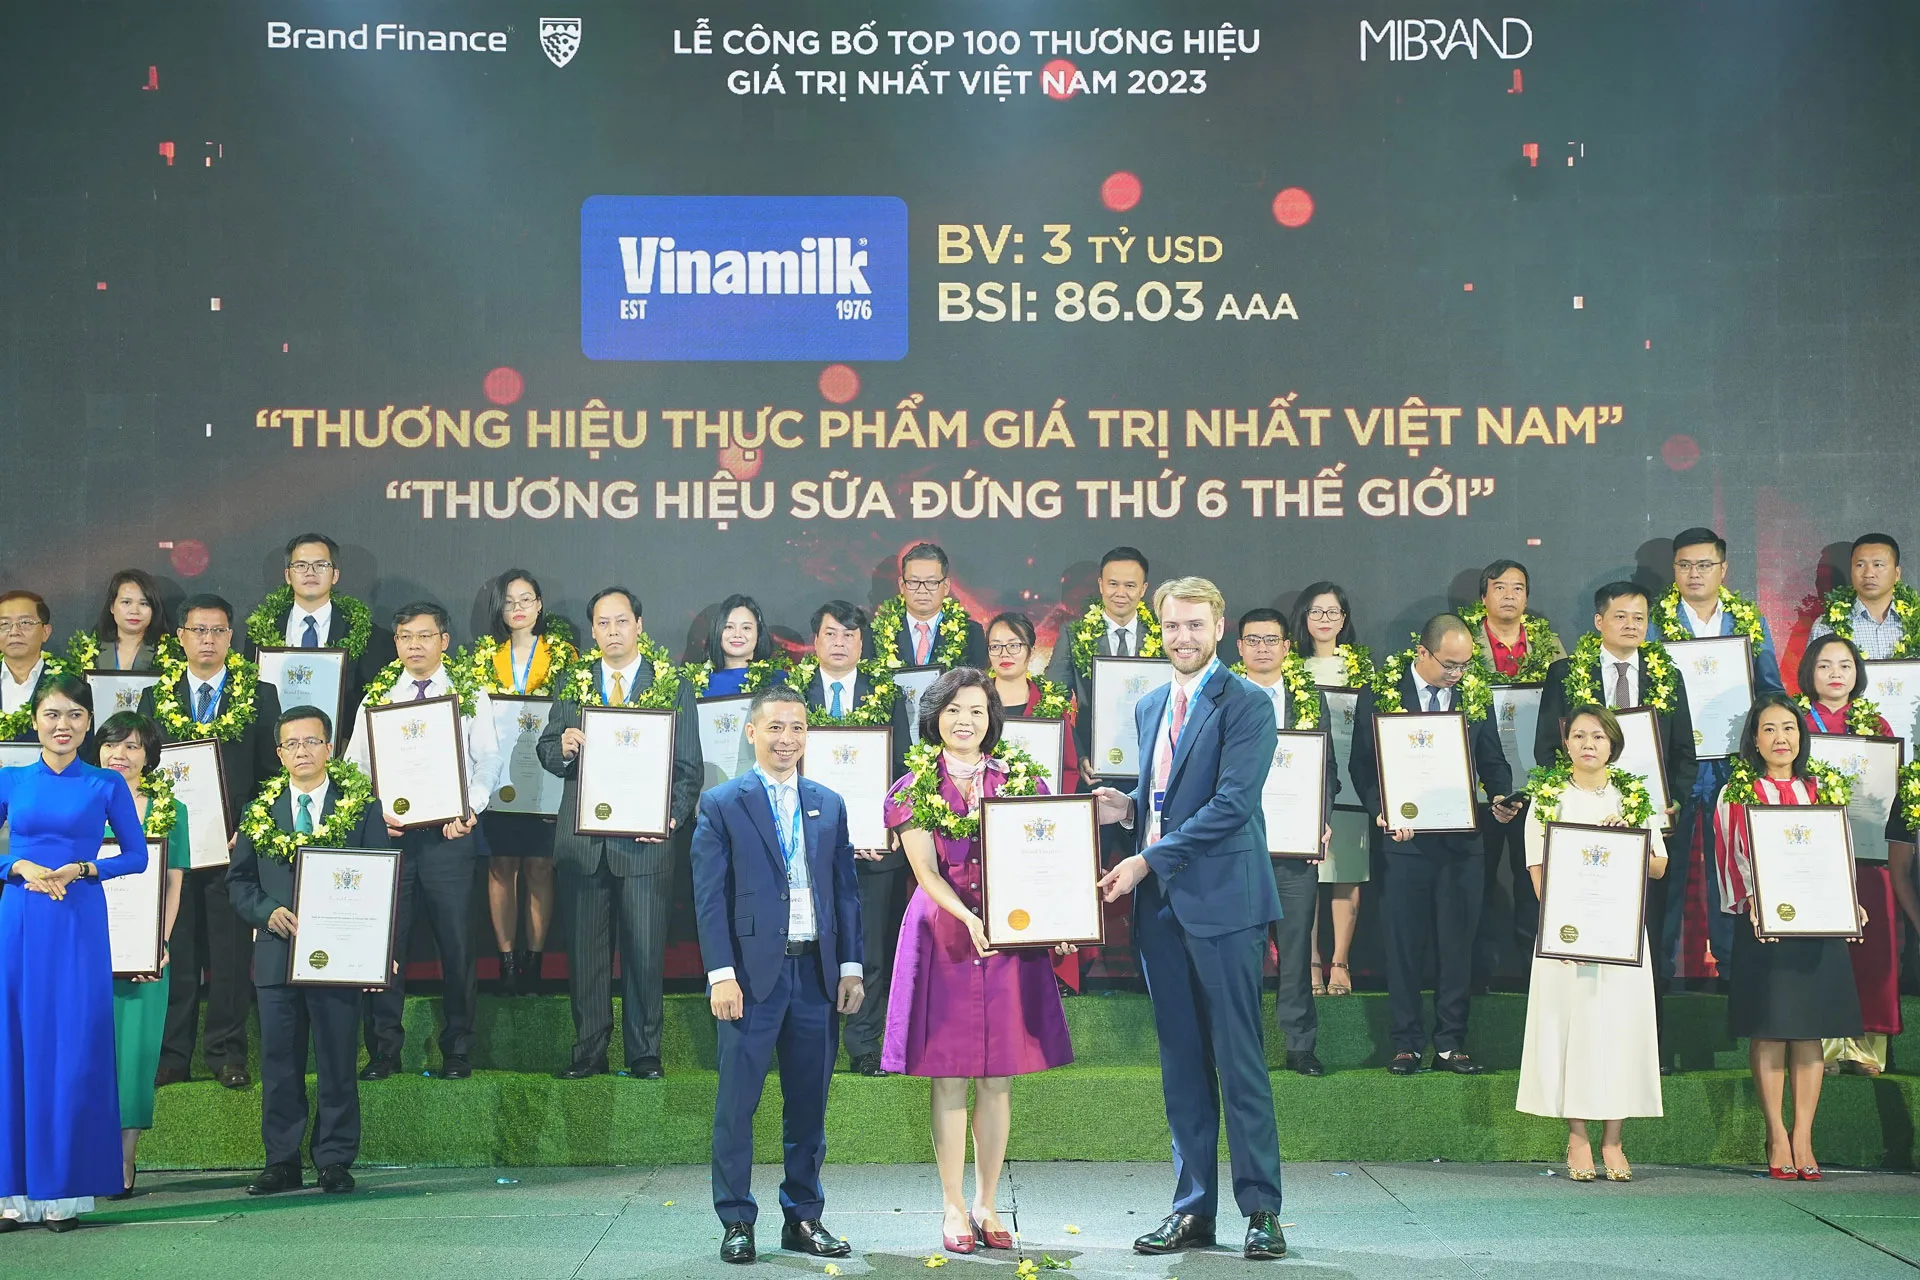 Thương hiệu thực phẩm giá trị nhất Việt Nam